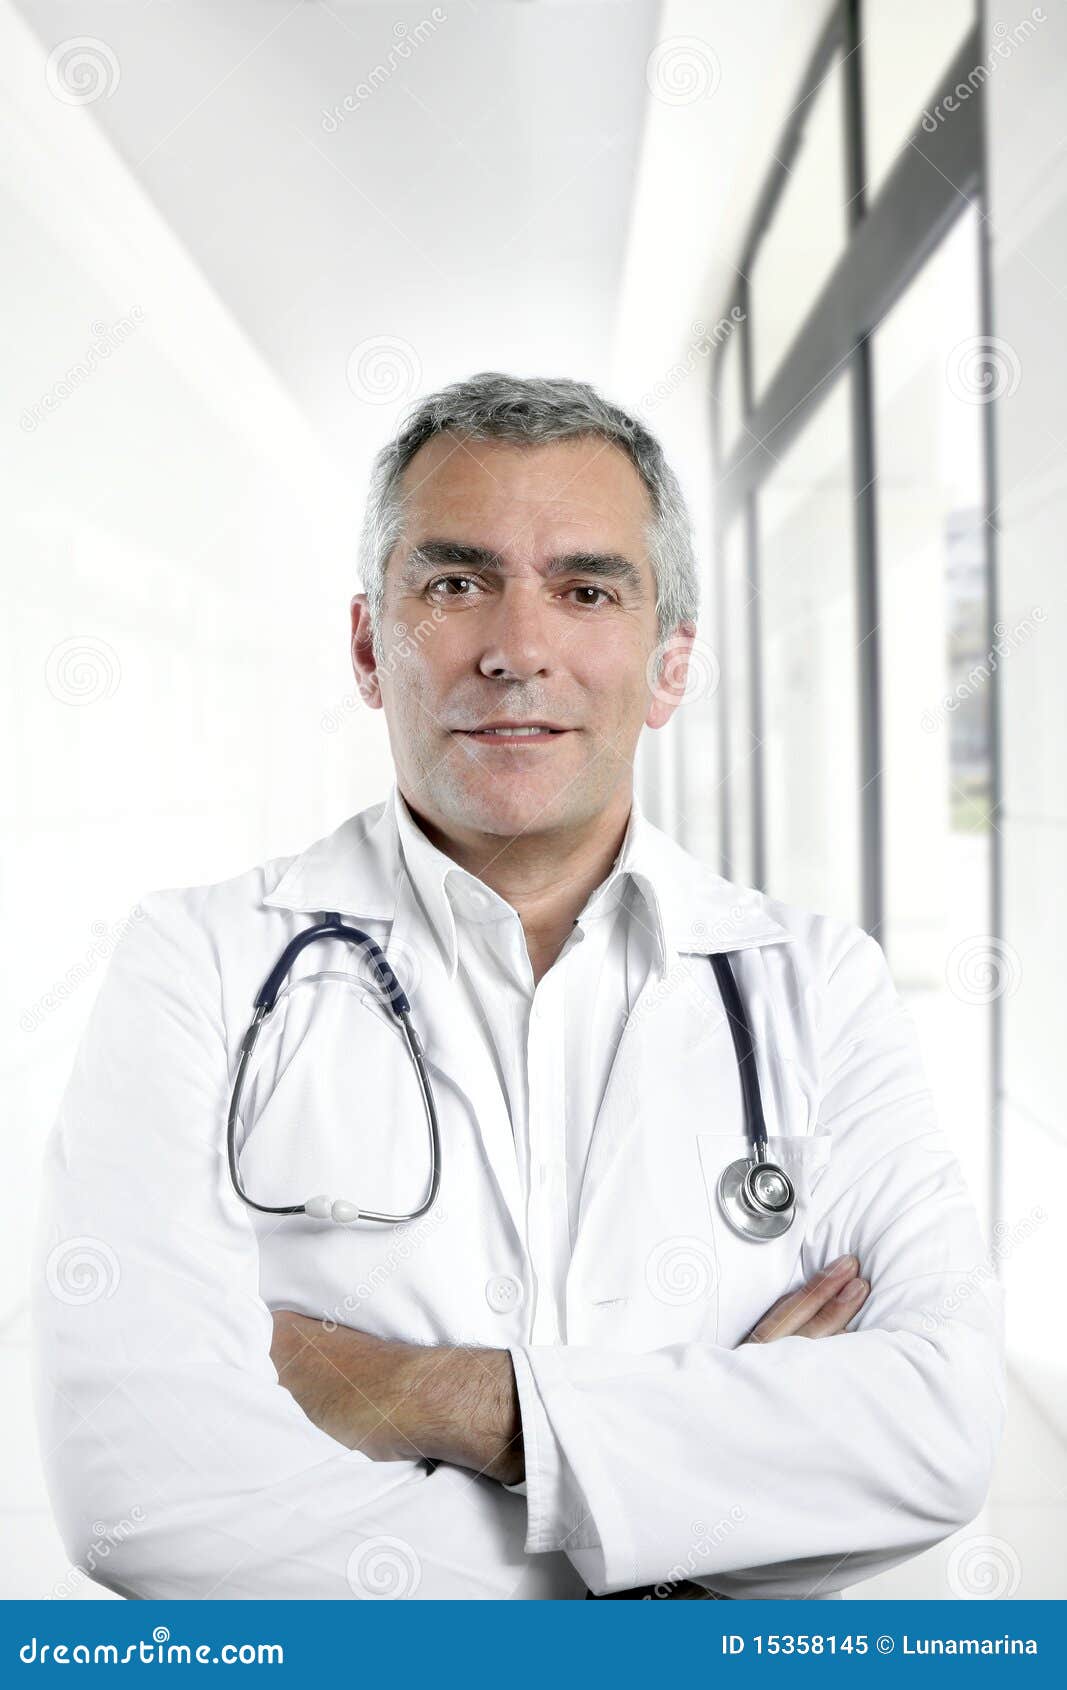 expertise senior doctor hospital portrait